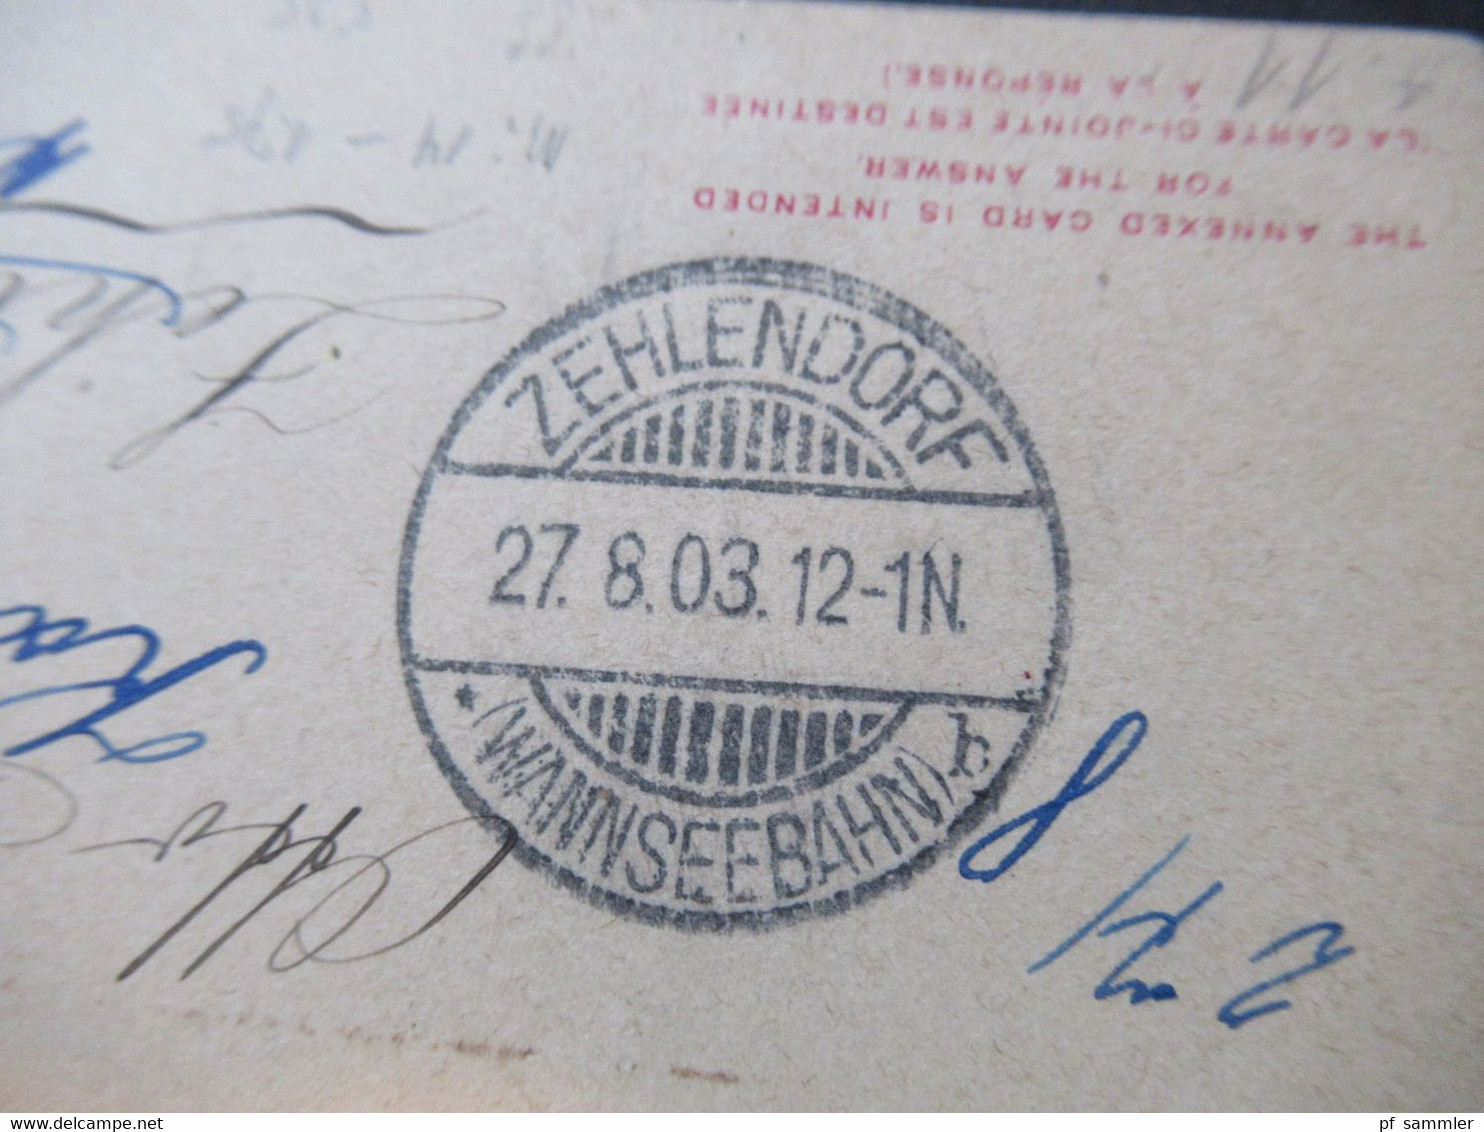 GB Kolonie Seychelles 1903 GA Doppelkarte Überdruck Local mit Zusatzfrankatur nach Zehlendorf weitergeleitet Hauptpost